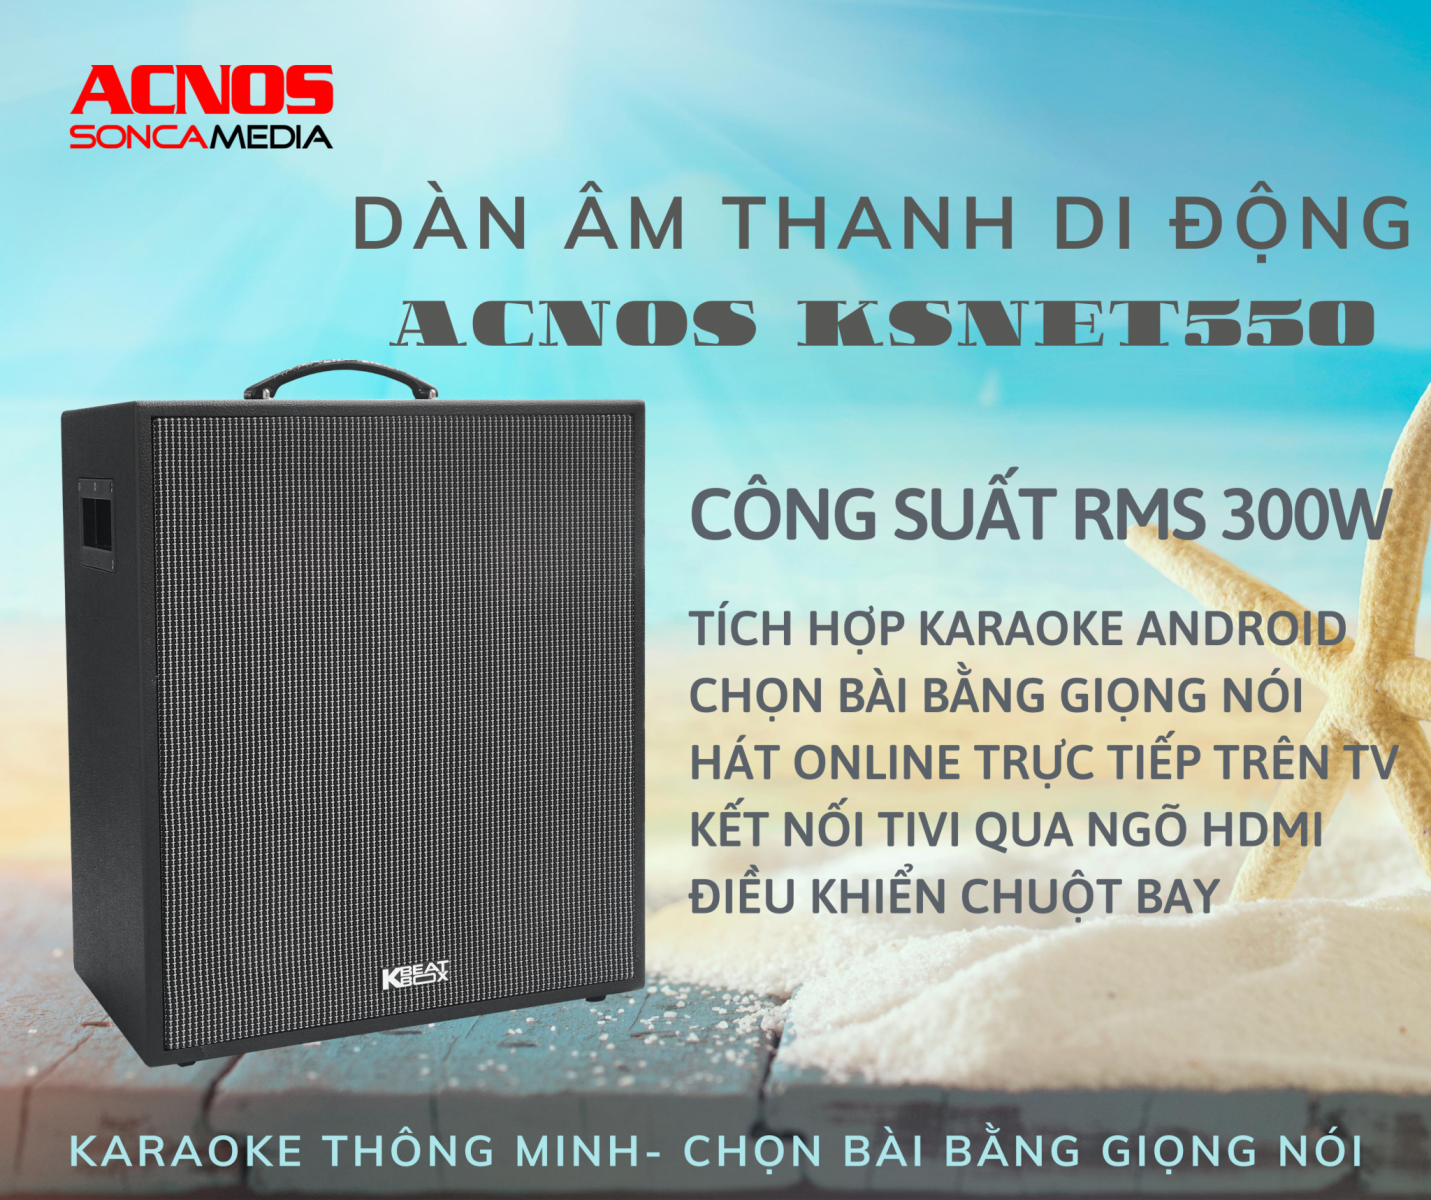 Dàn Âm Thanh Di Động ACNOS KSNET550 